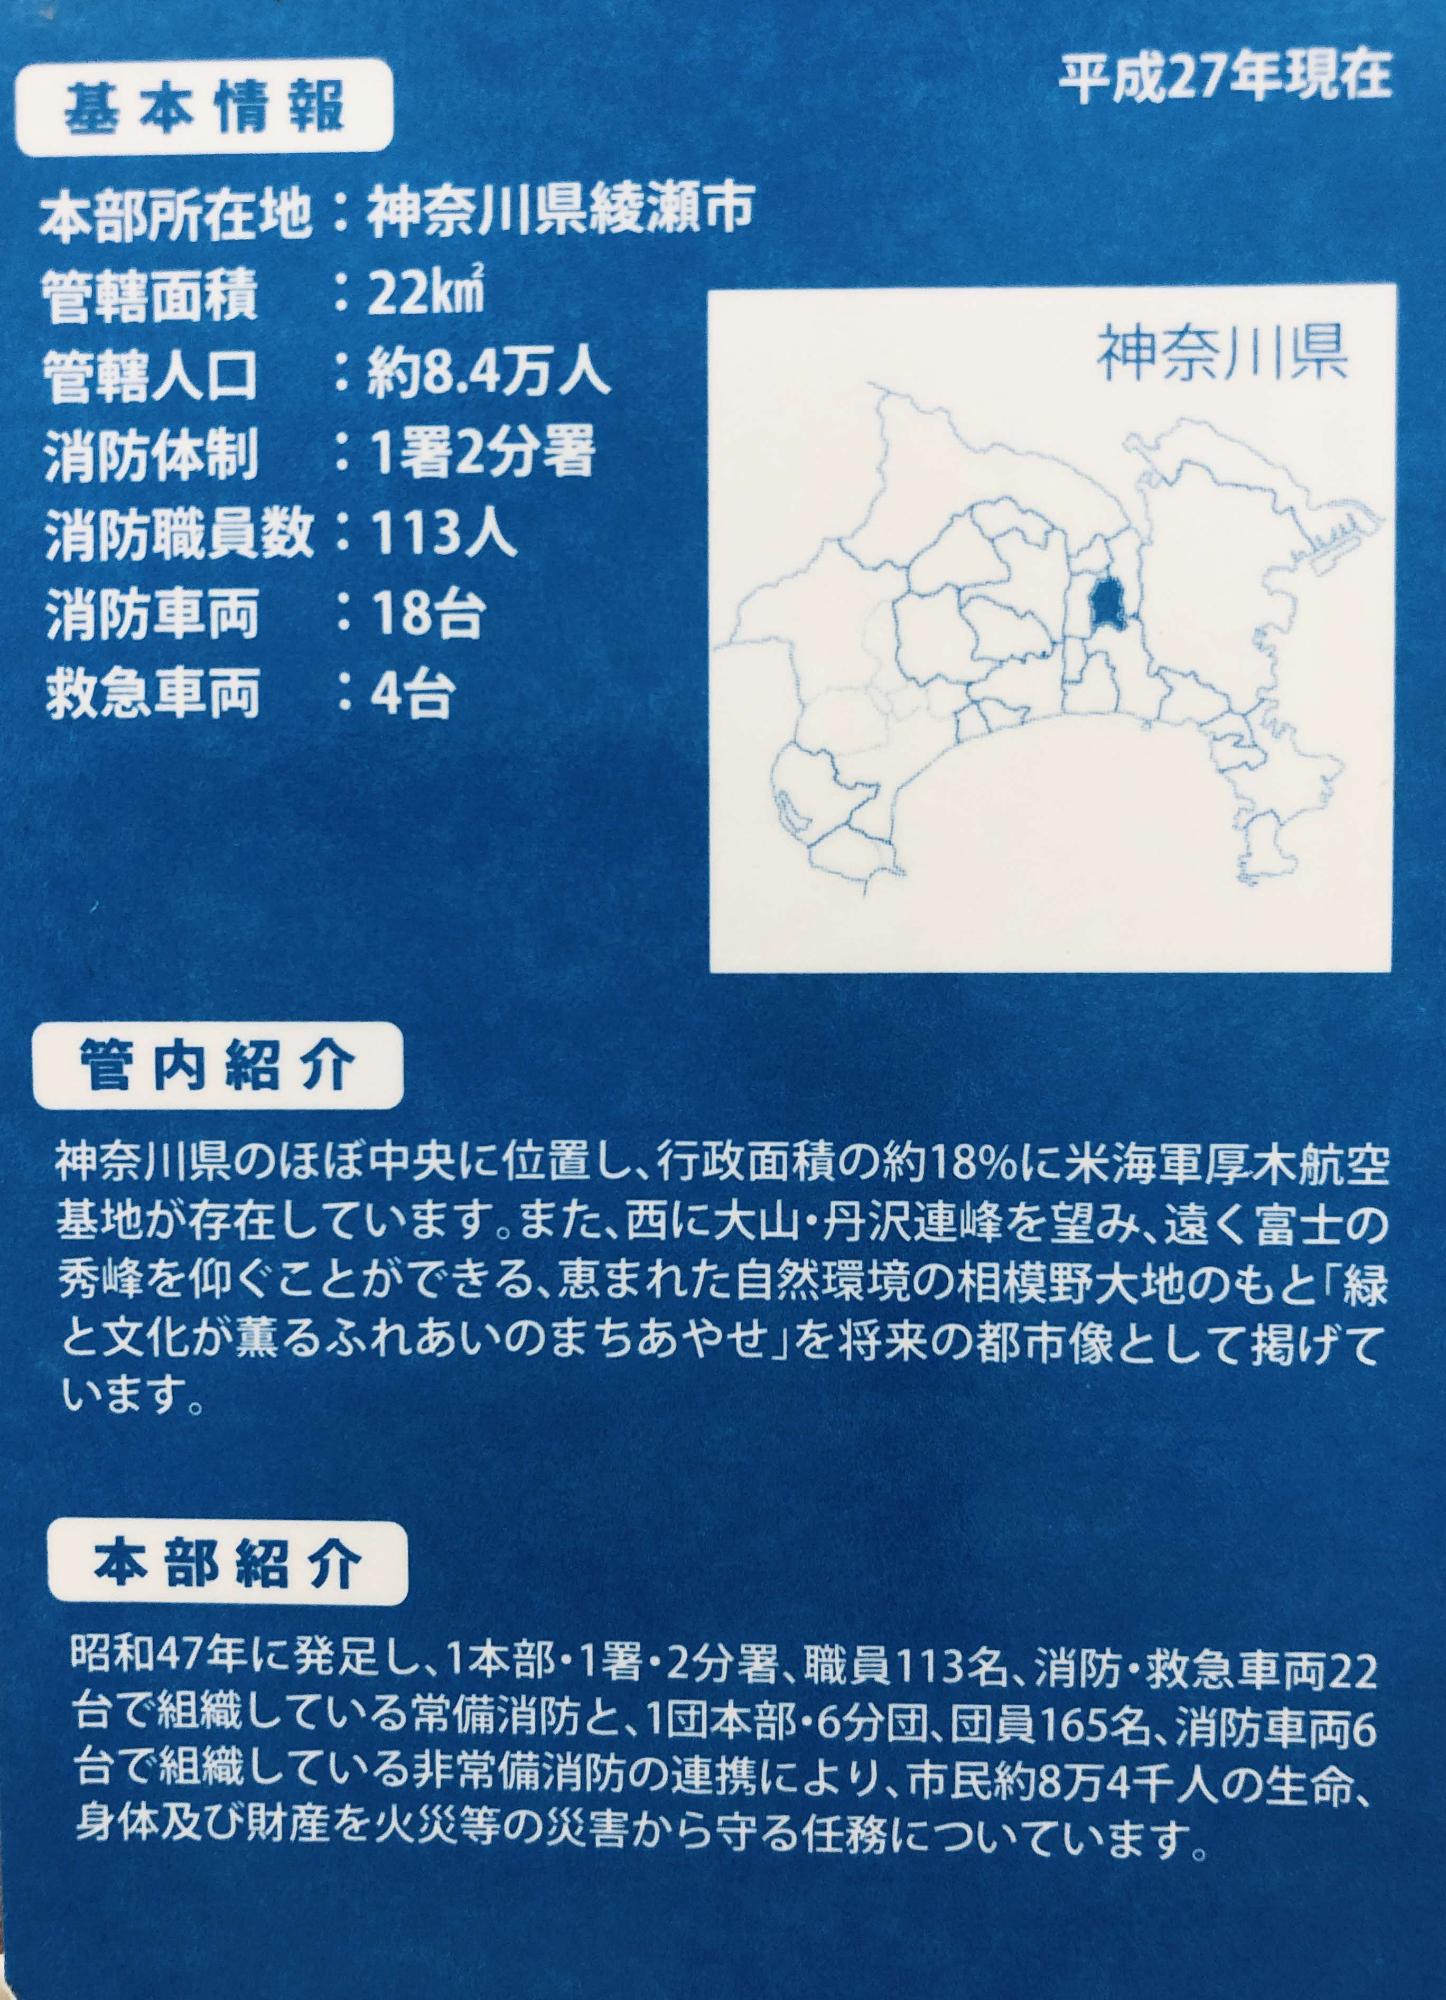 綾瀬市の基本情報、管内紹介、本部紹介と神奈川県の地図の中の綾瀬市の位置を示した地図が掲載されている綾瀬市消防本部カードの裏面